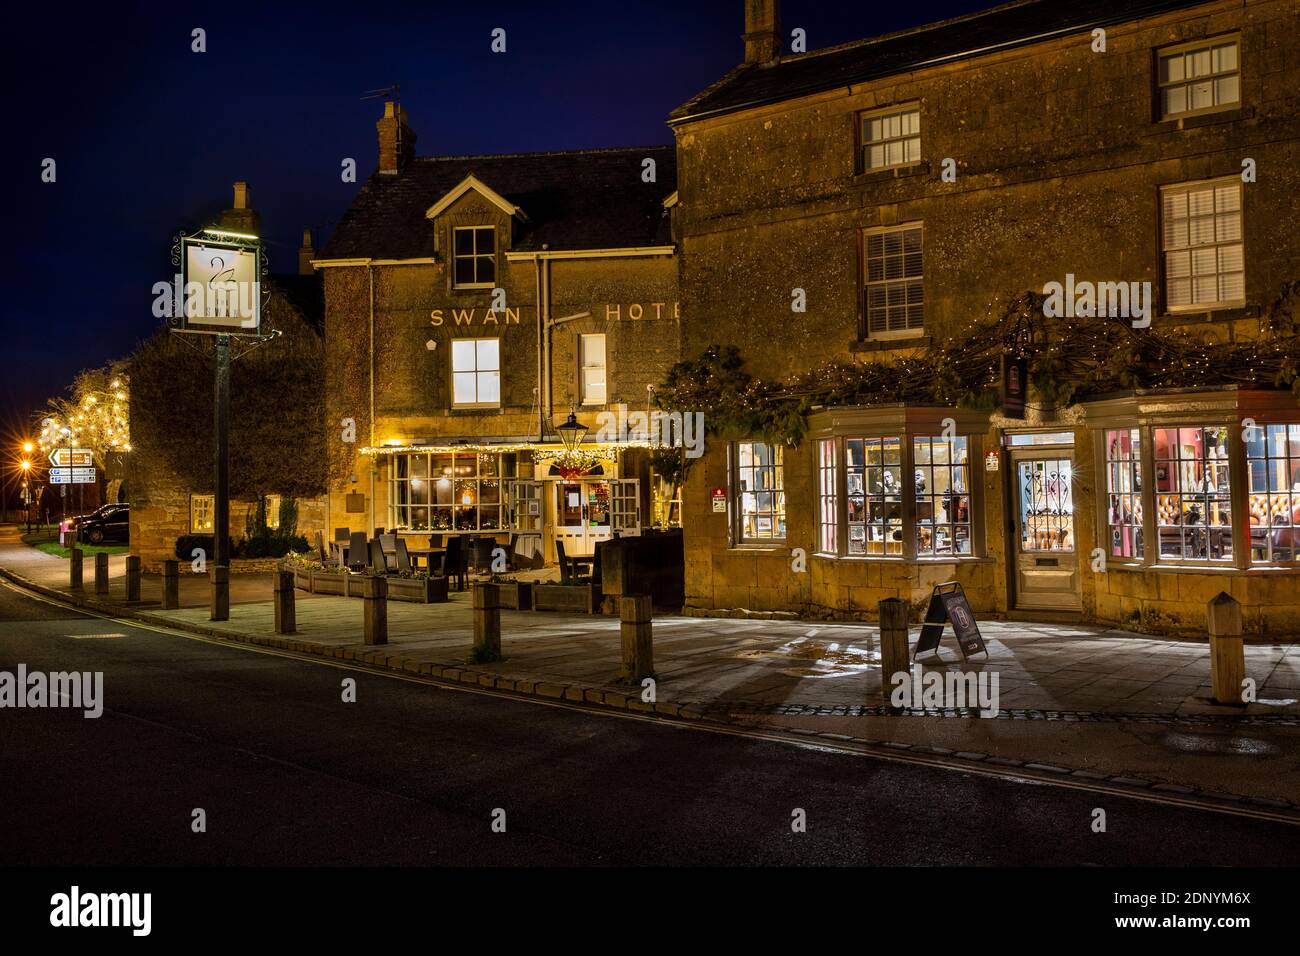 Royaume-Uni, Gloucestershire, Broadway, The Green, Swan Hotel et Cheltenham House magasin d'antiquités illuminé pour le village fin de nuit shopping de Noël Banque D'Images